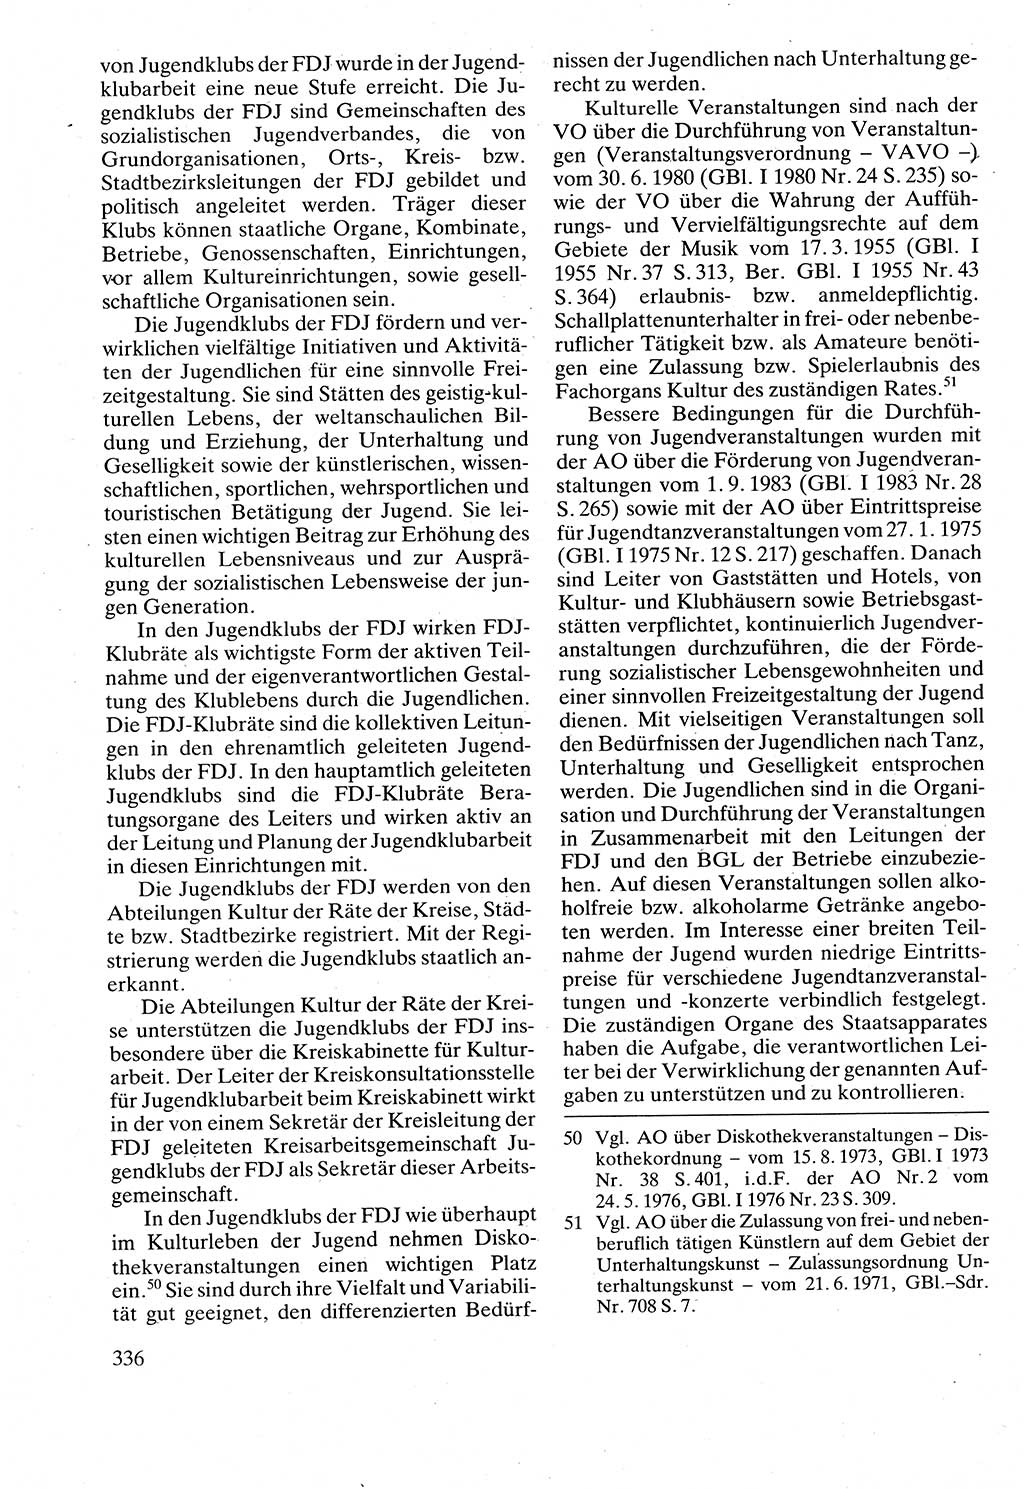 Verwaltungsrecht [Deutsche Demokratische Republik (DDR)], Lehrbuch 1988, Seite 336 (Verw.-R. DDR Lb. 1988, S. 336)